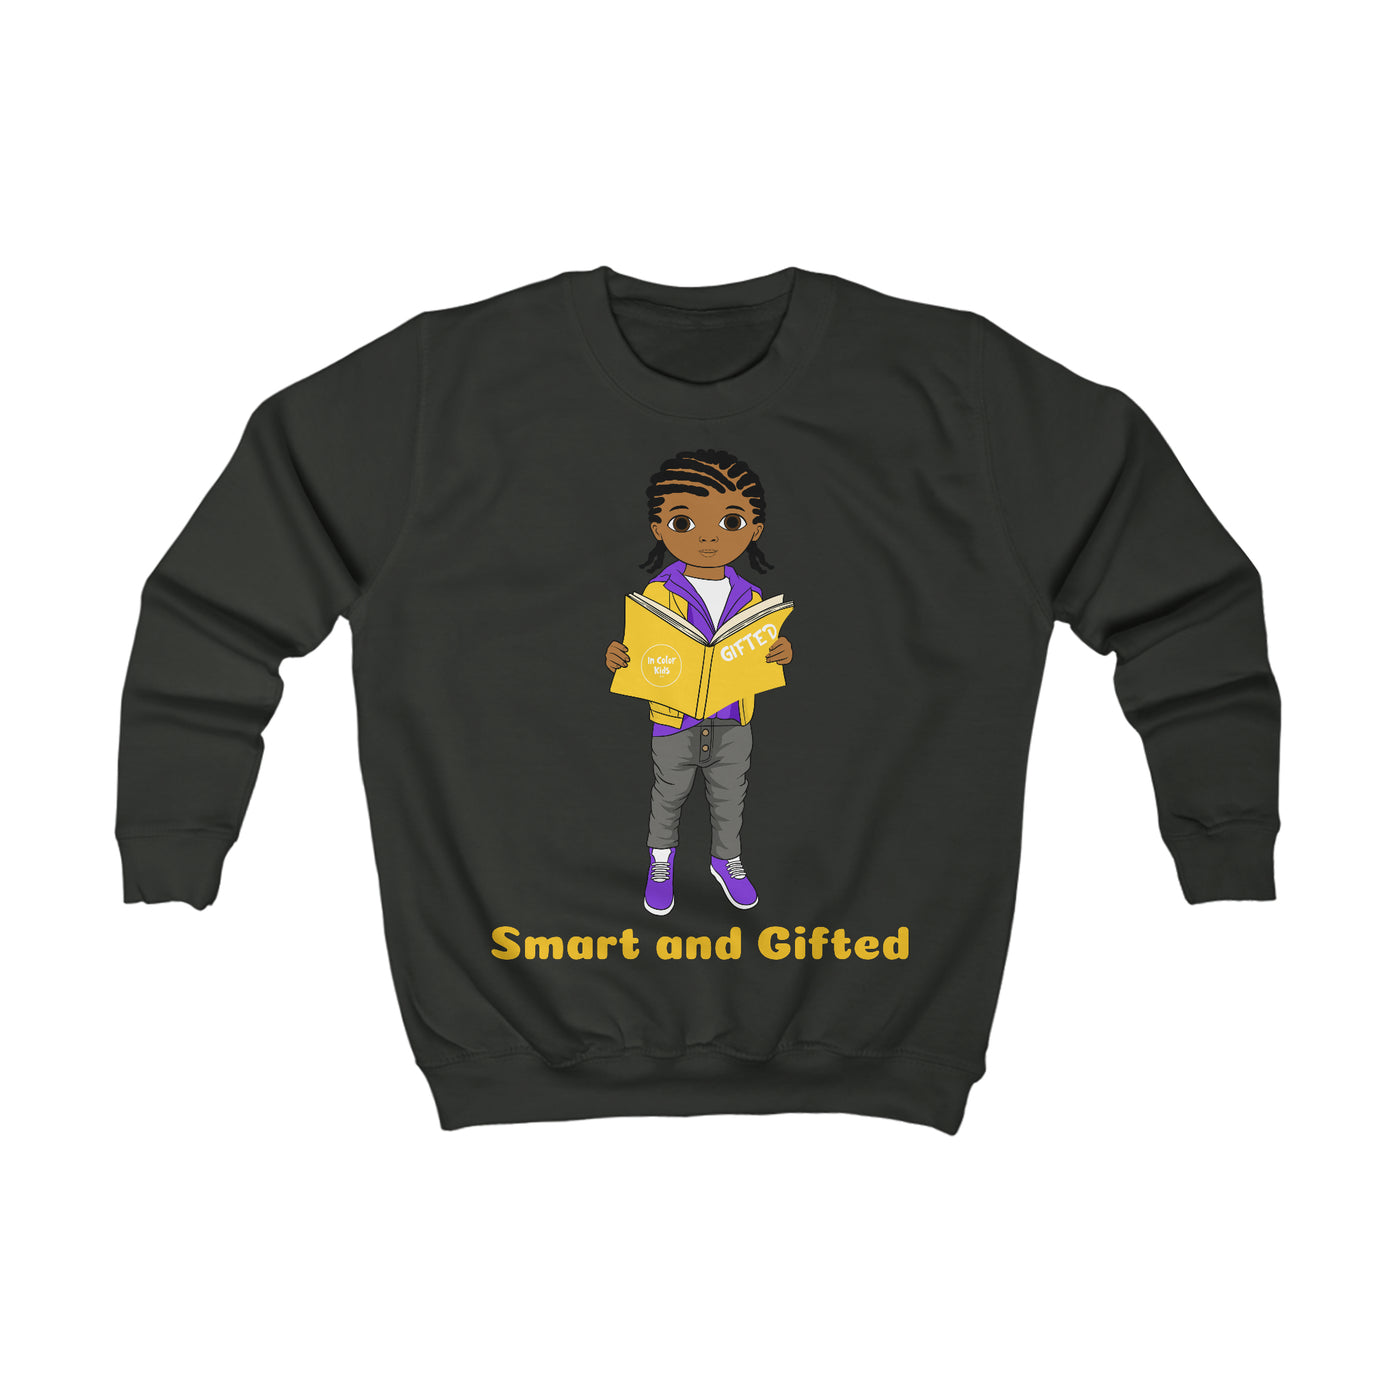 Smart and Gifted Sweatshirt - Caramel